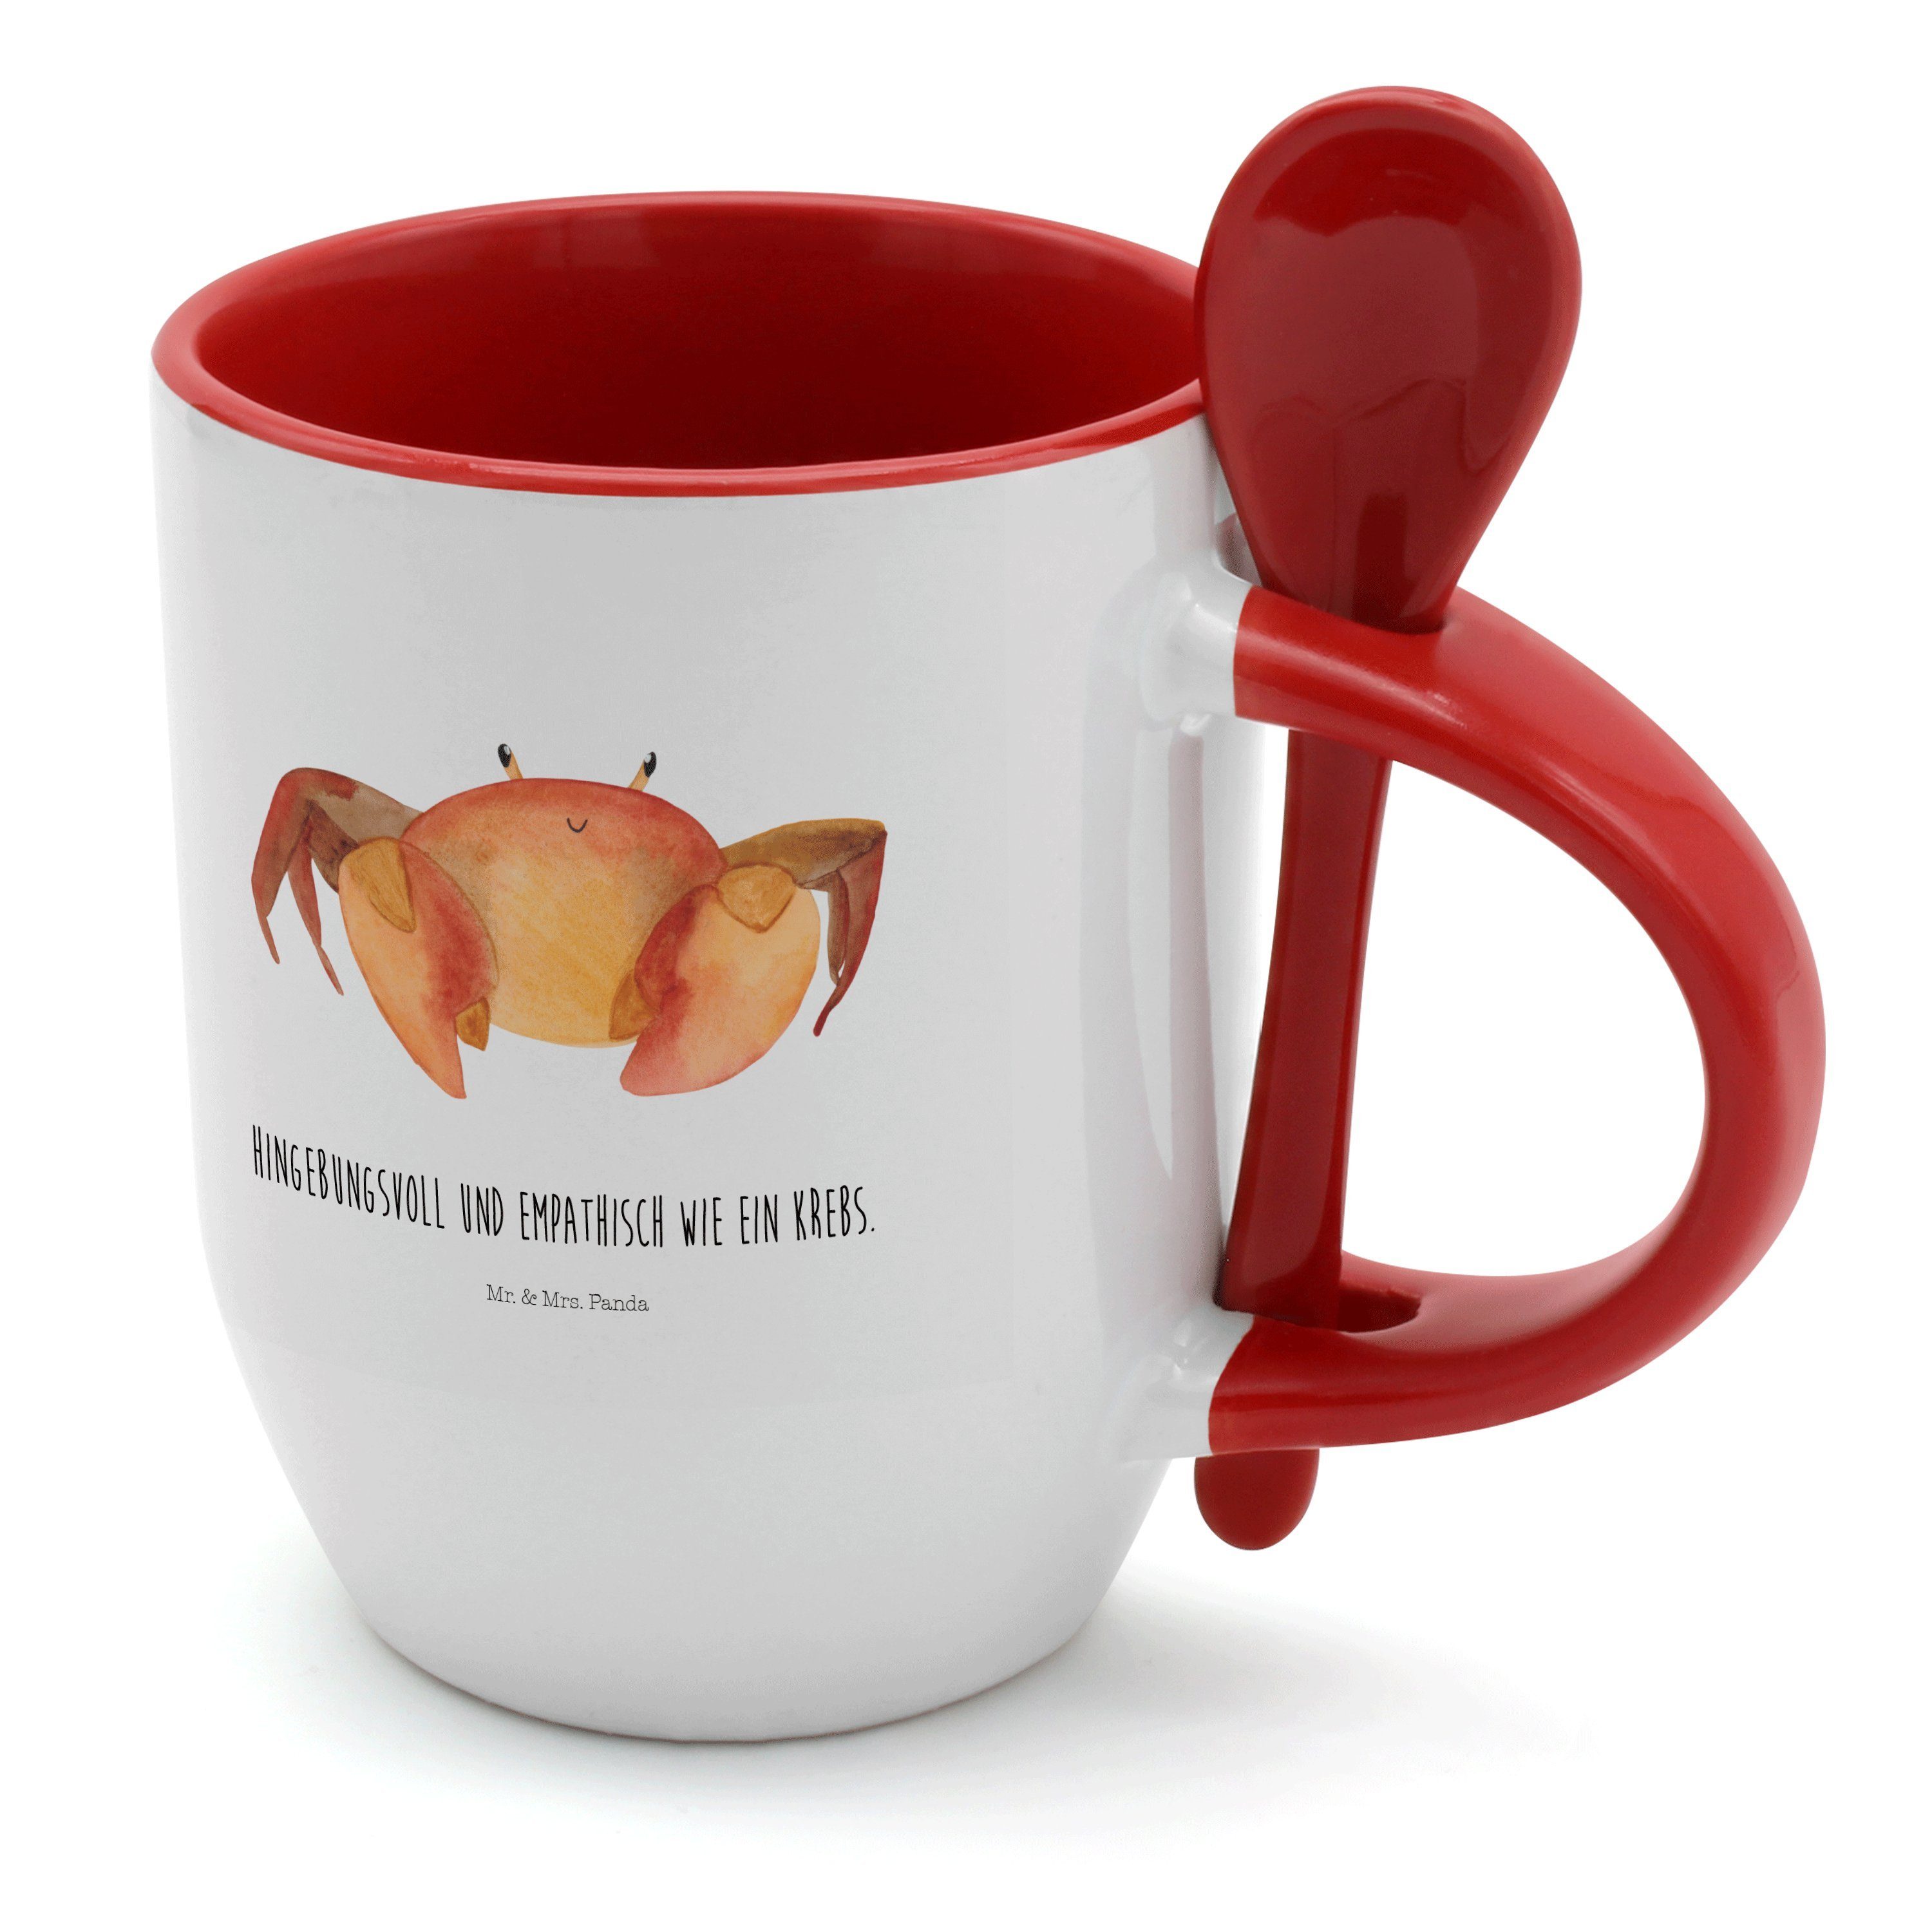 Mr. & Mrs. Panda Tasse Sternzeichen Krebs - Weiß - Geschenk, Tasse, Tasse mit Spruch, Tierkr, Keramik